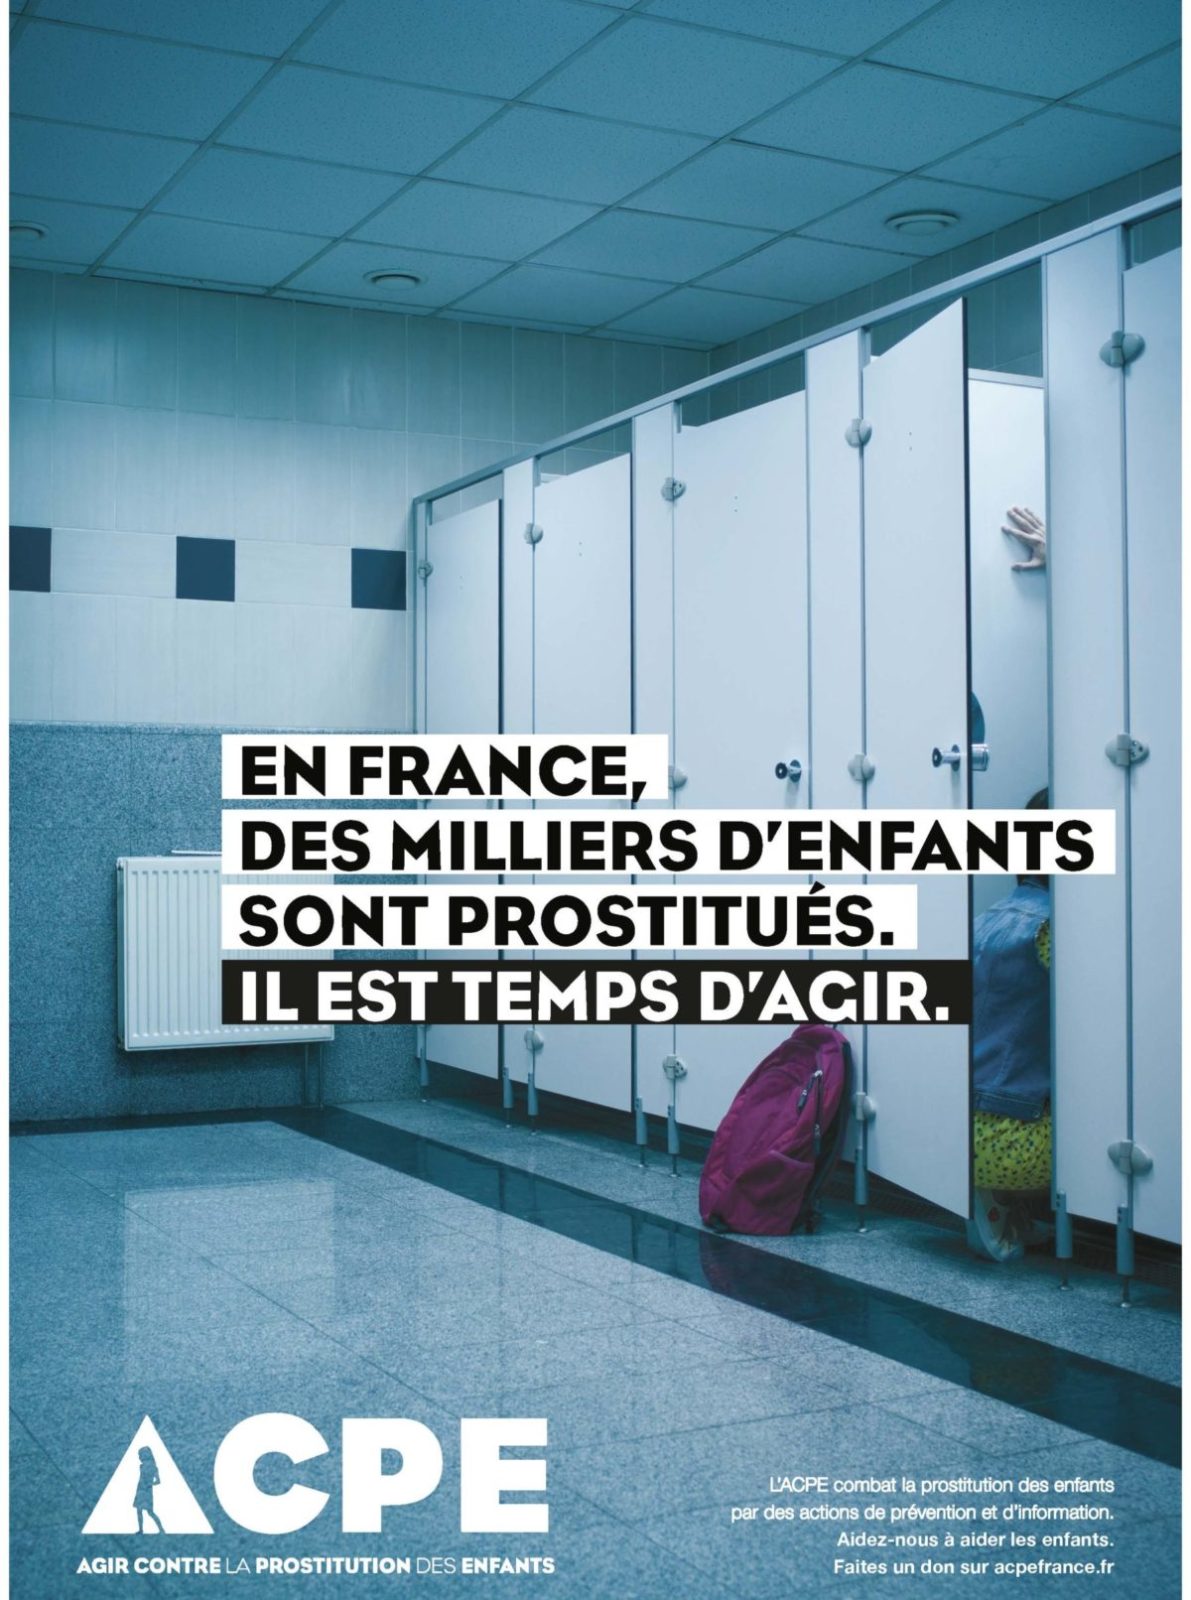 Image choc de la dernière campagne de prévention menée par l'ACPE qui agit contre la prostitution des enfants.